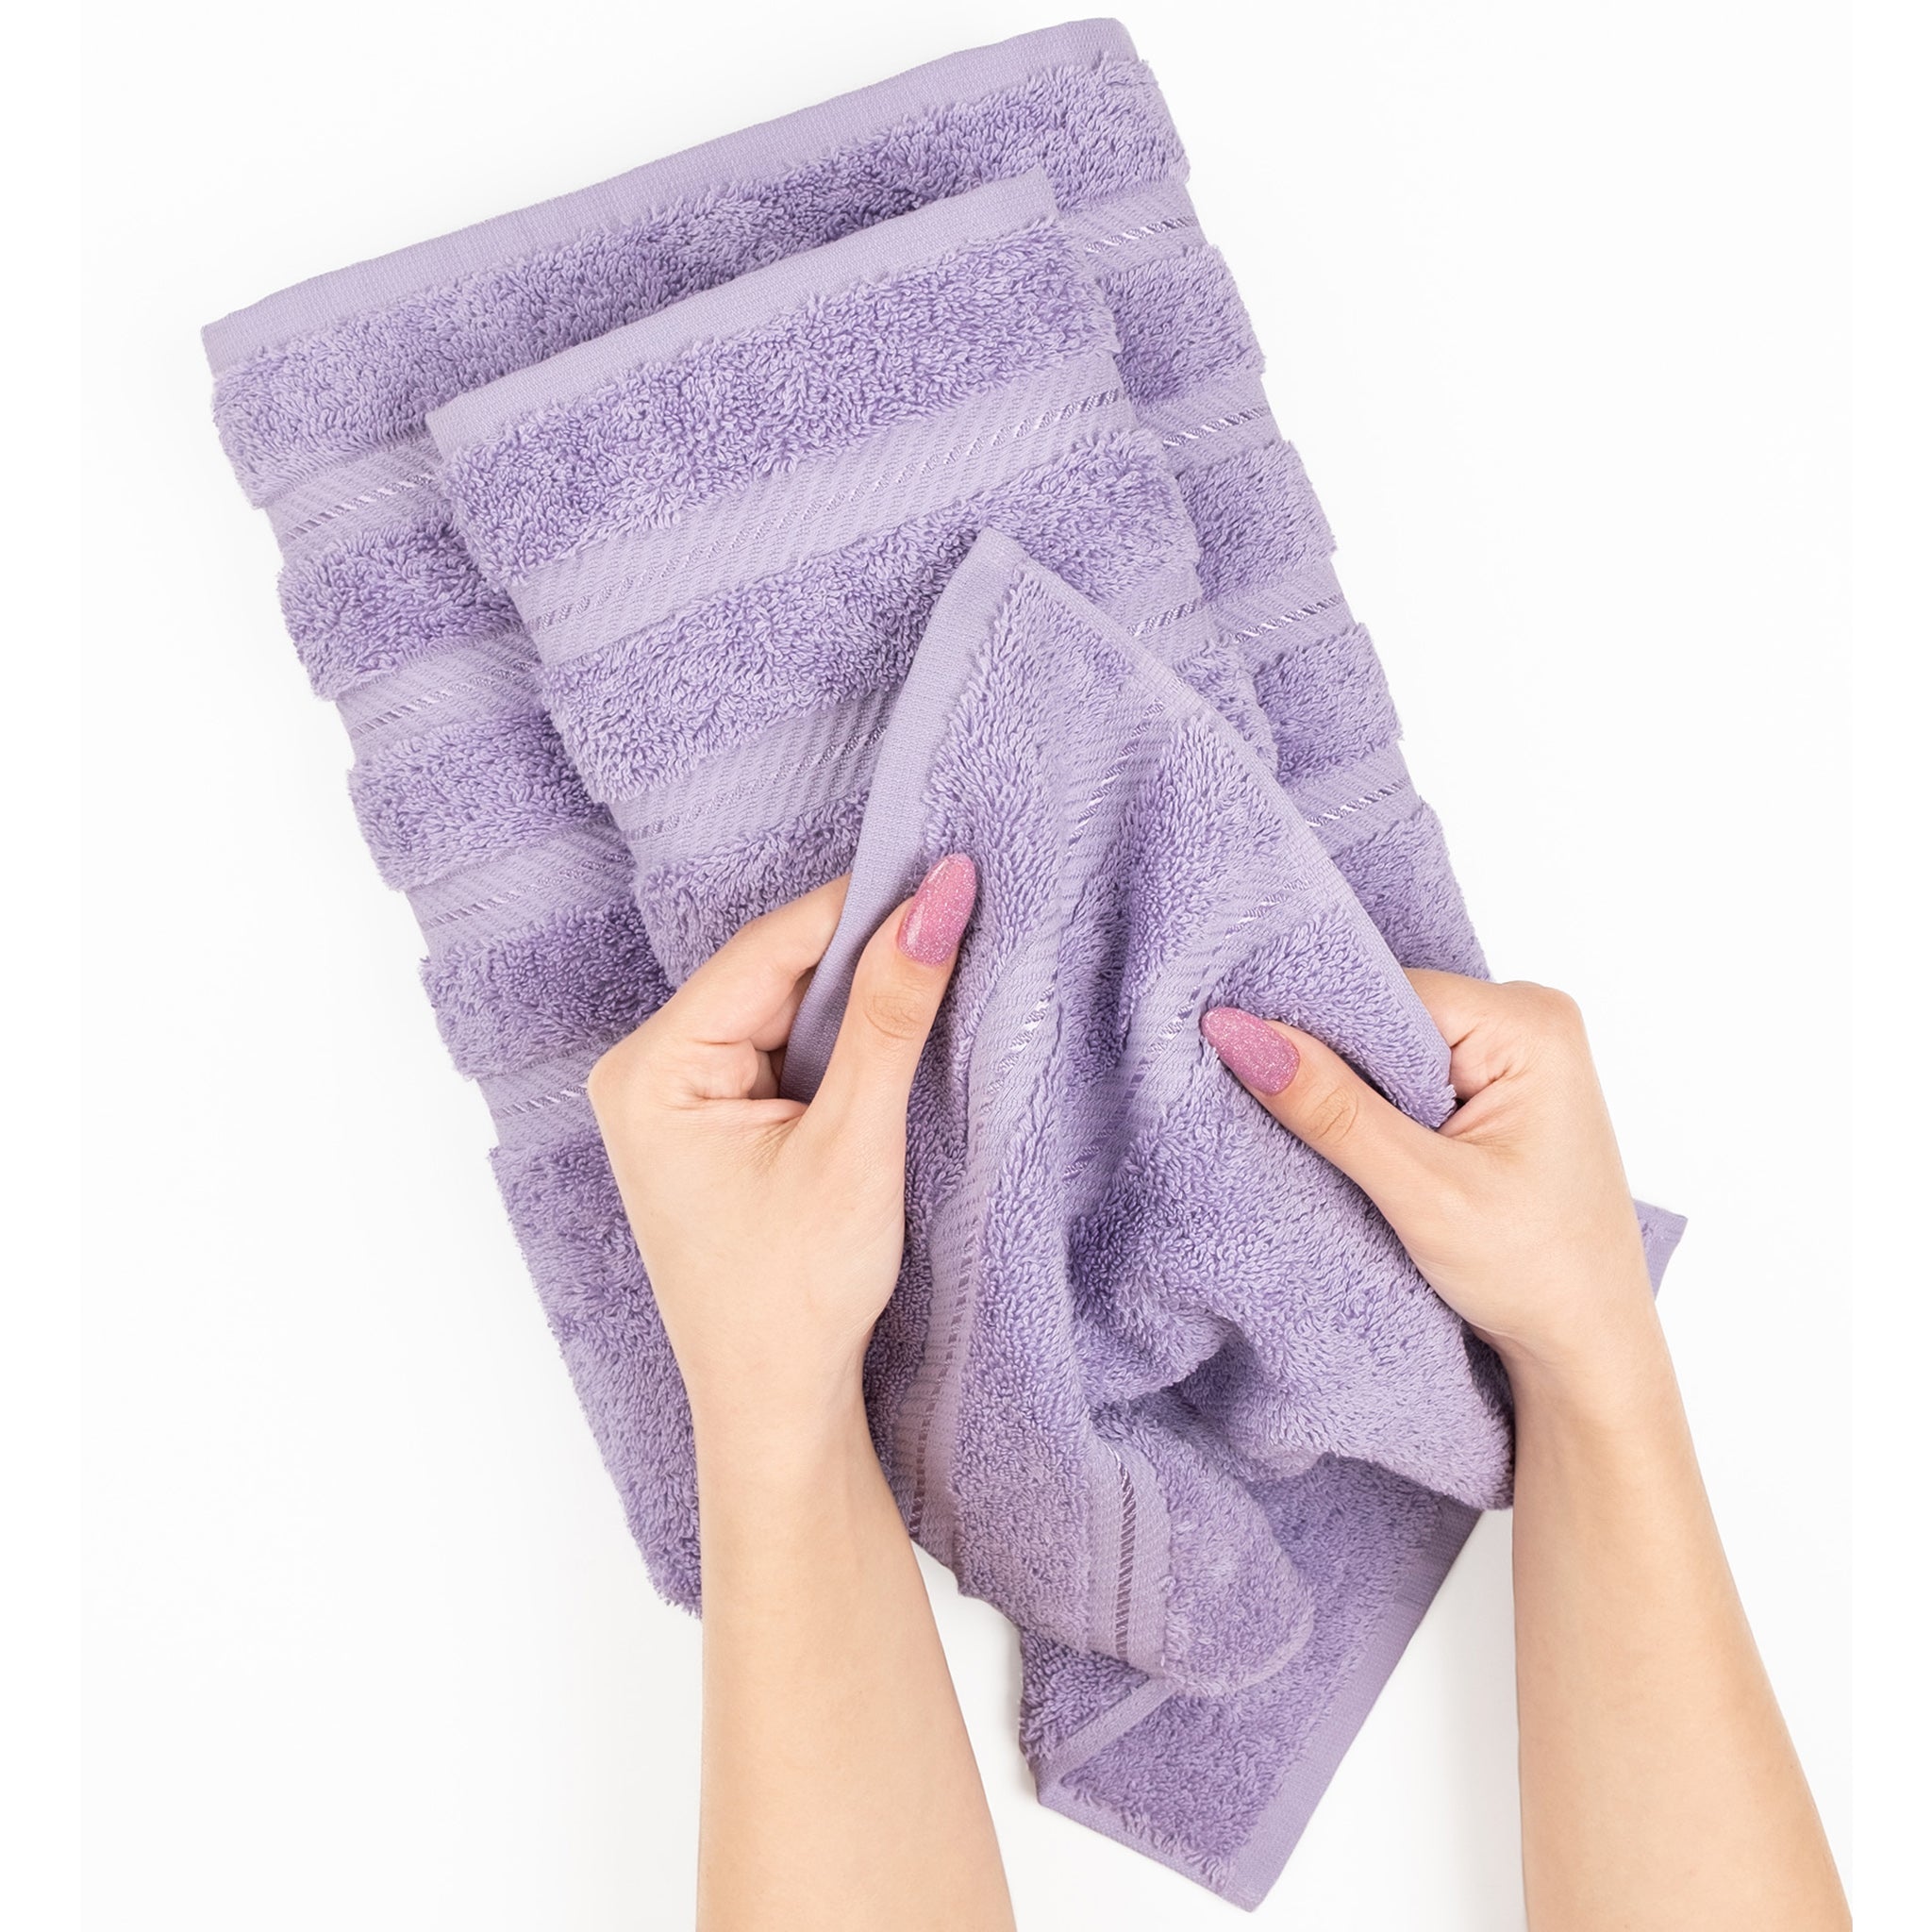 American Soft Linen 100% Turkish Cotton 4 Pack Bath Towel Set Wholesale lilac-5